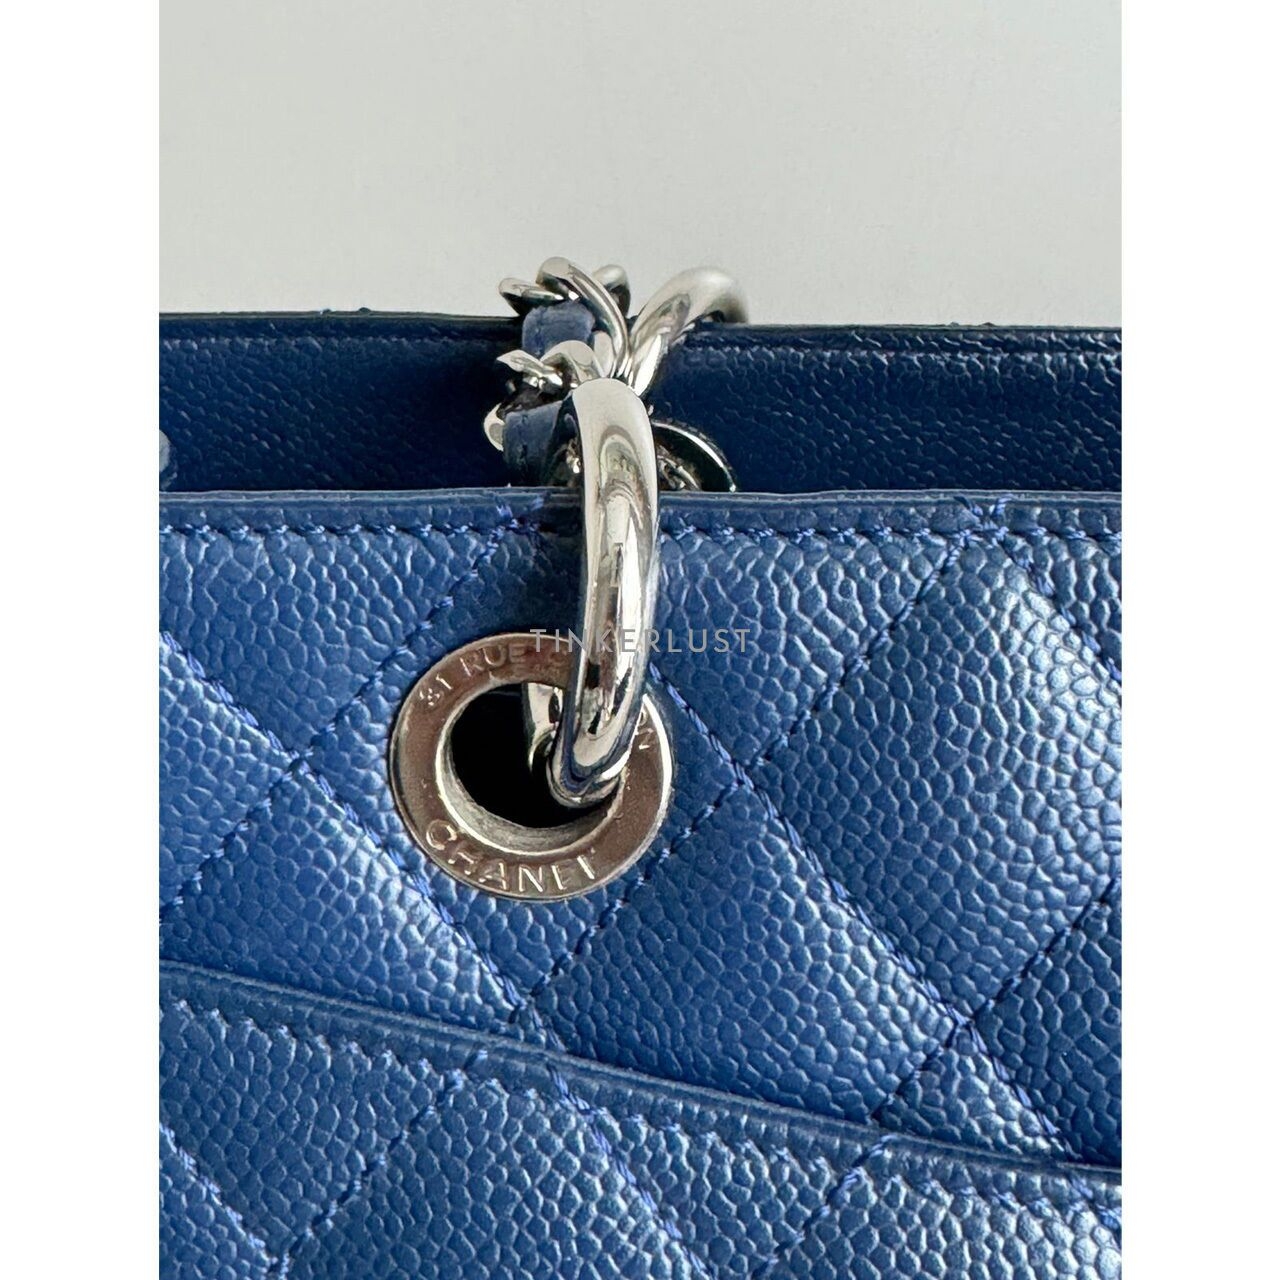 Chanel GST Blue Caviar SHW #15 Tote Bag